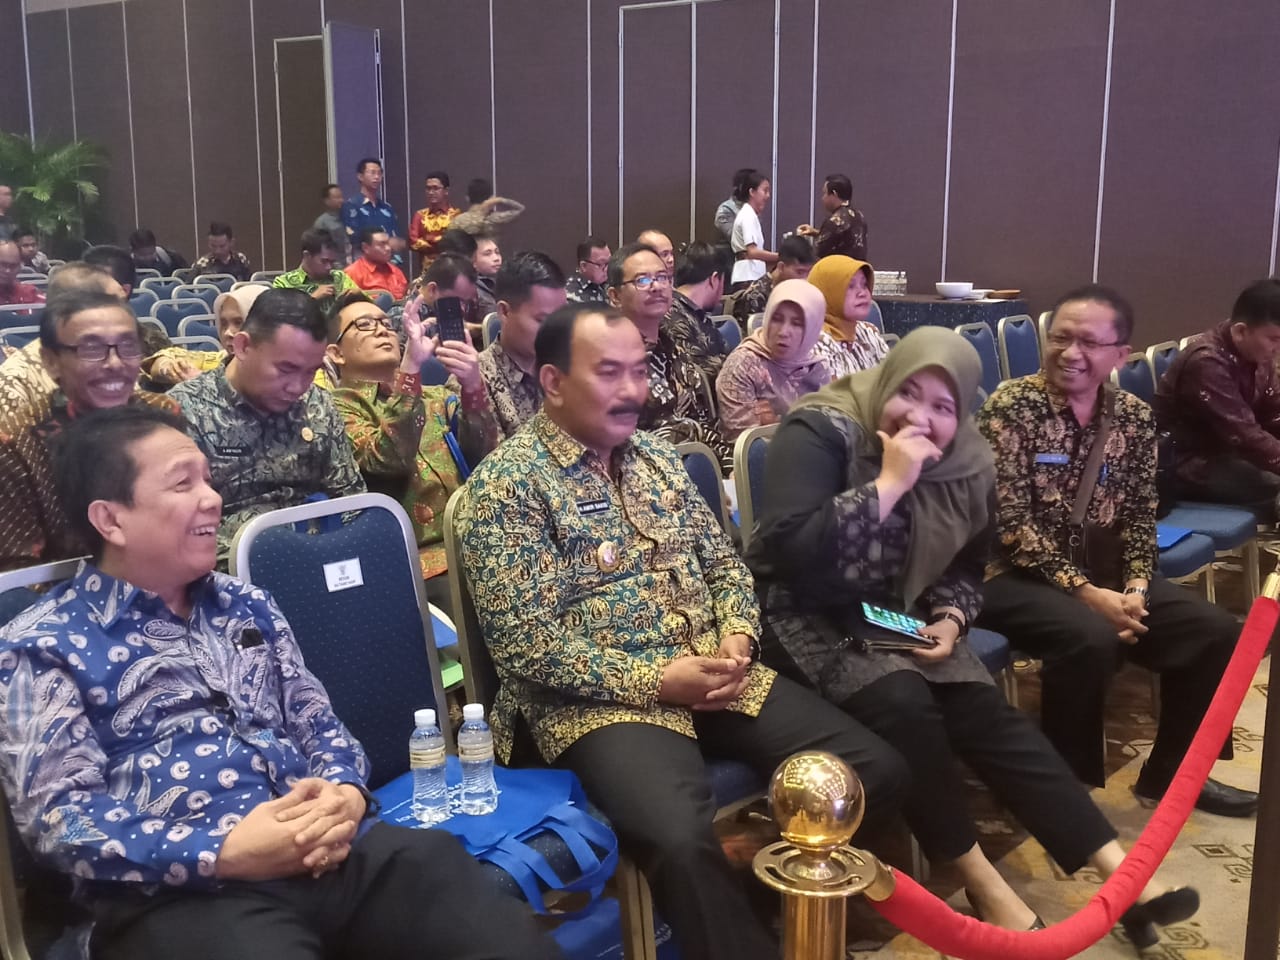 Wabup Amir Sakib Hadiri Rakernas Apkasi Smart Regency And Forum 2019 Di Bali